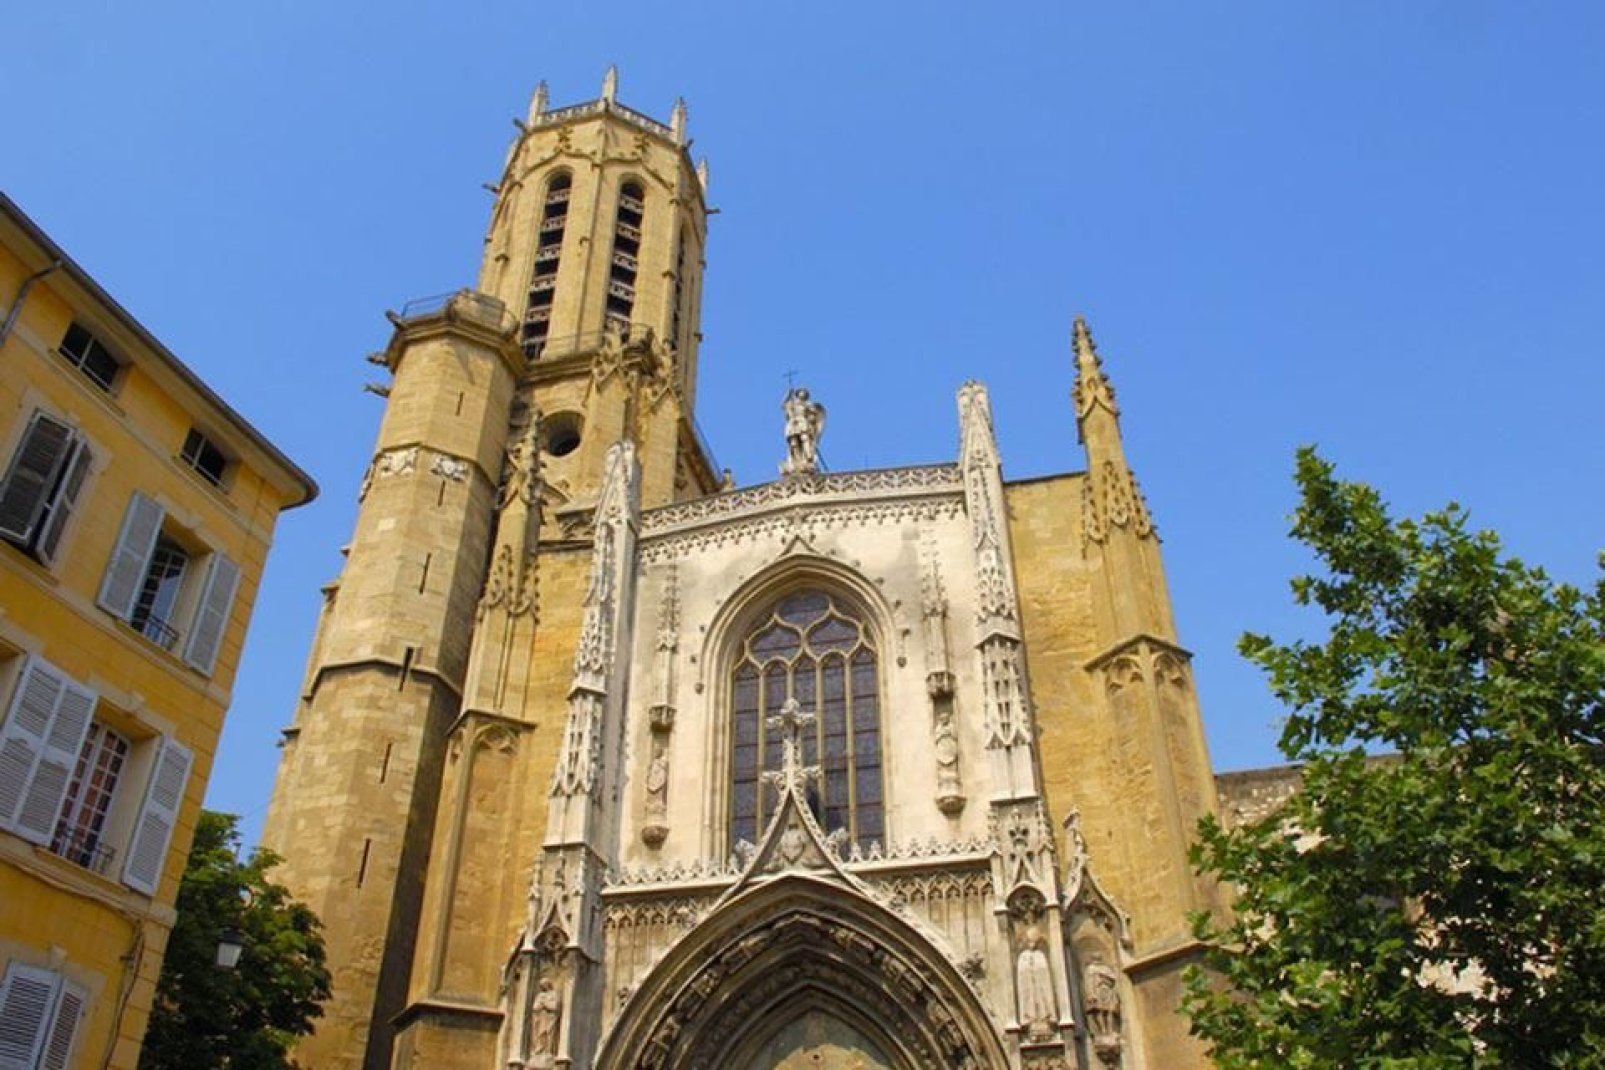 La Cathédrale Saint-Sauveur d'Aix-en-Provence est un monument unique en son genre puisqu'il combine les styles romans et gothiques.